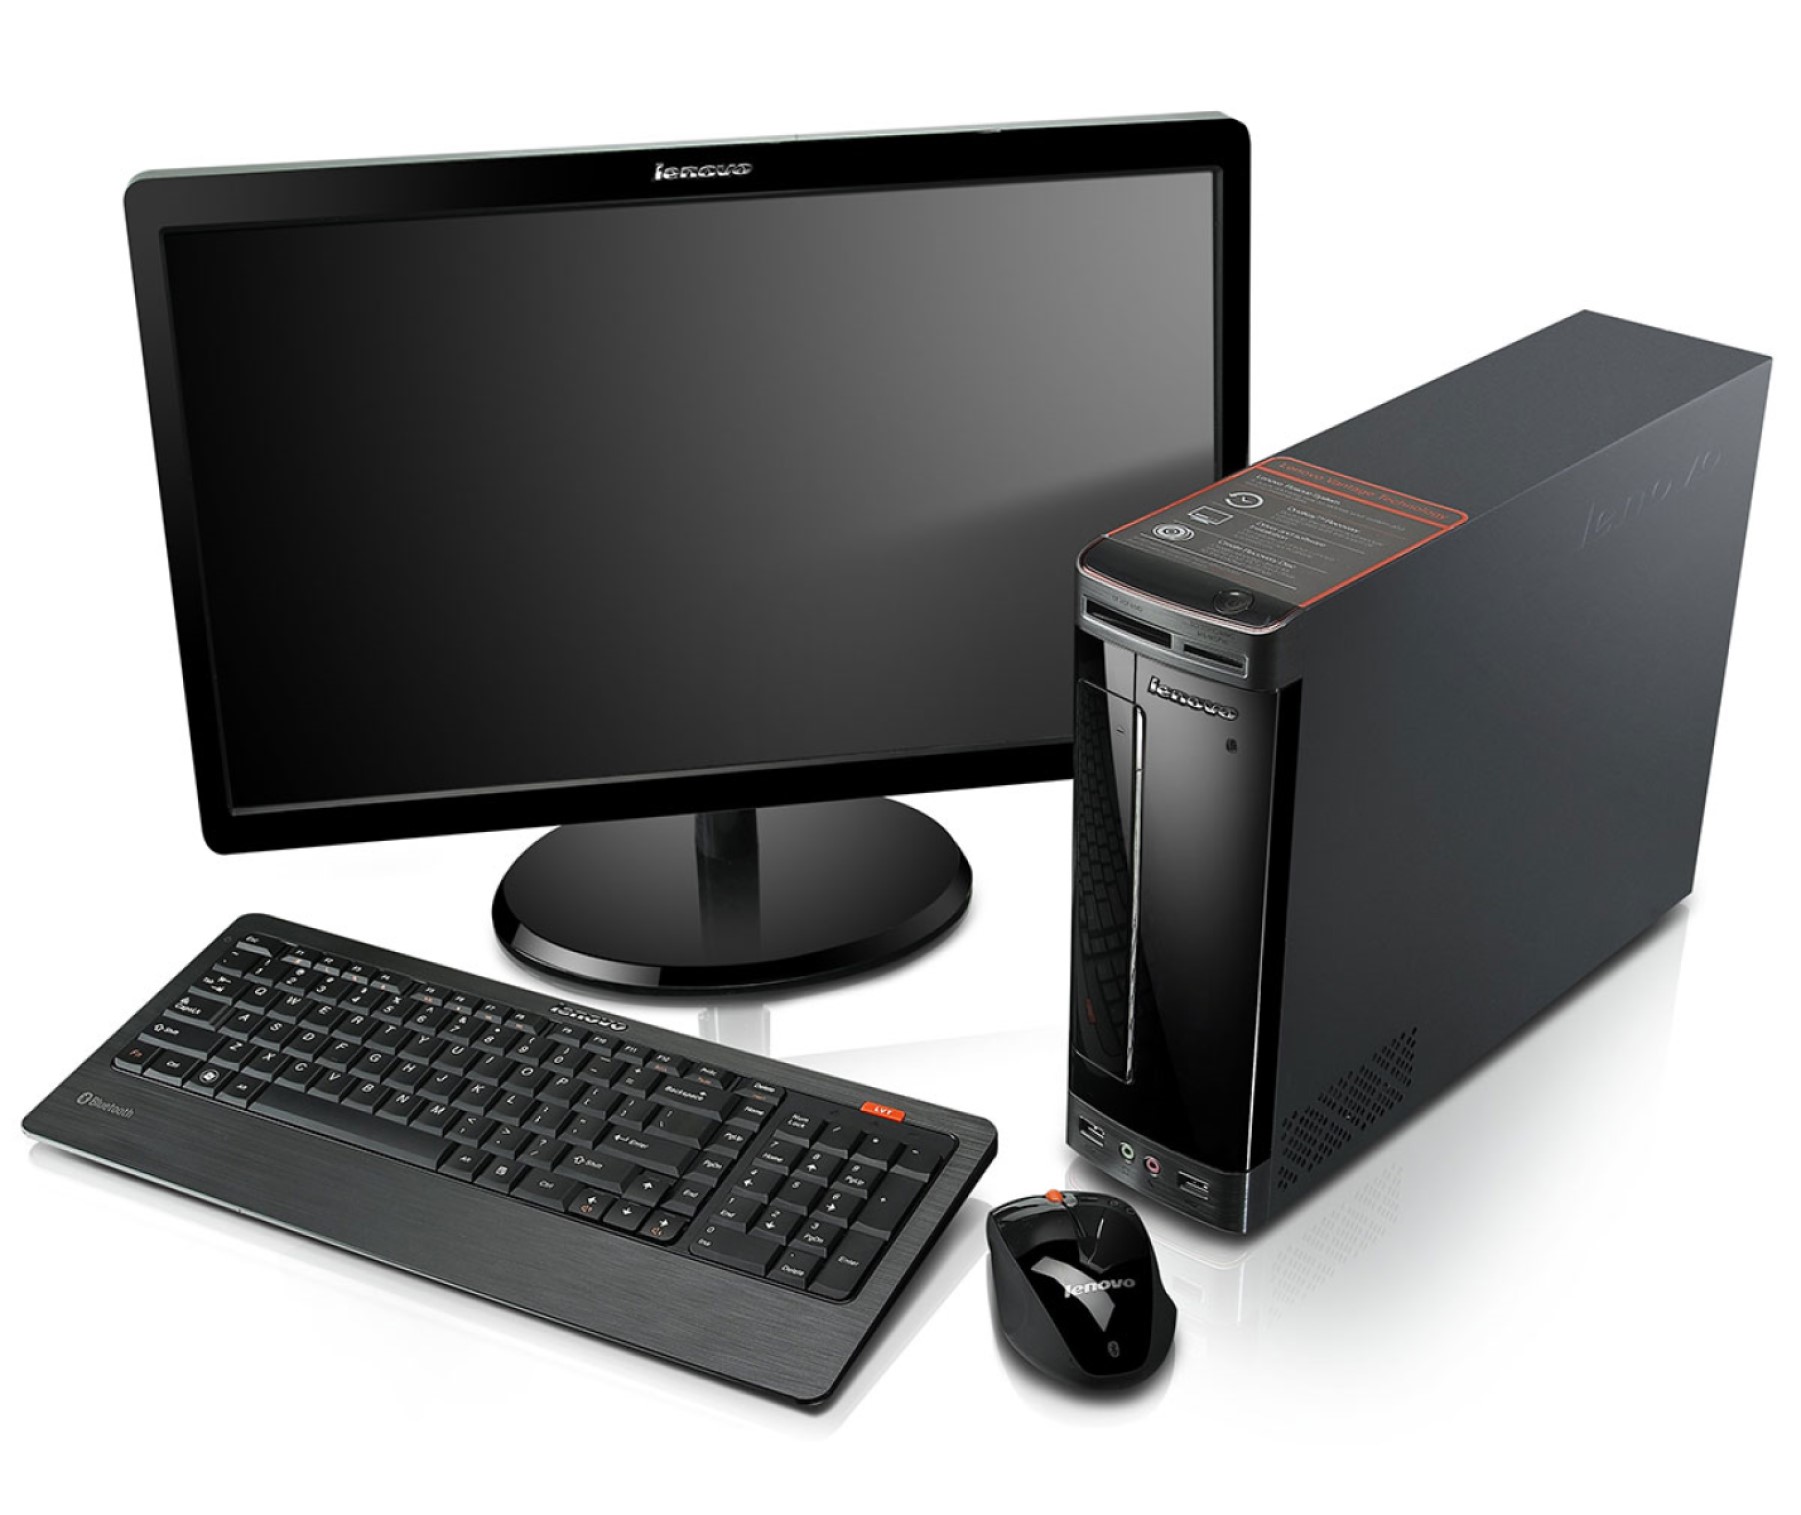 Монитор мыши. Компьютер (сист. Блок, монитор TFT 27 Acer Black). Инв.. Системный блок монитор клавиатура мышь. Lenovo h320 компьютер. Компьютер (монитор ЖК 22", системный блок, клавиатура, мышь).